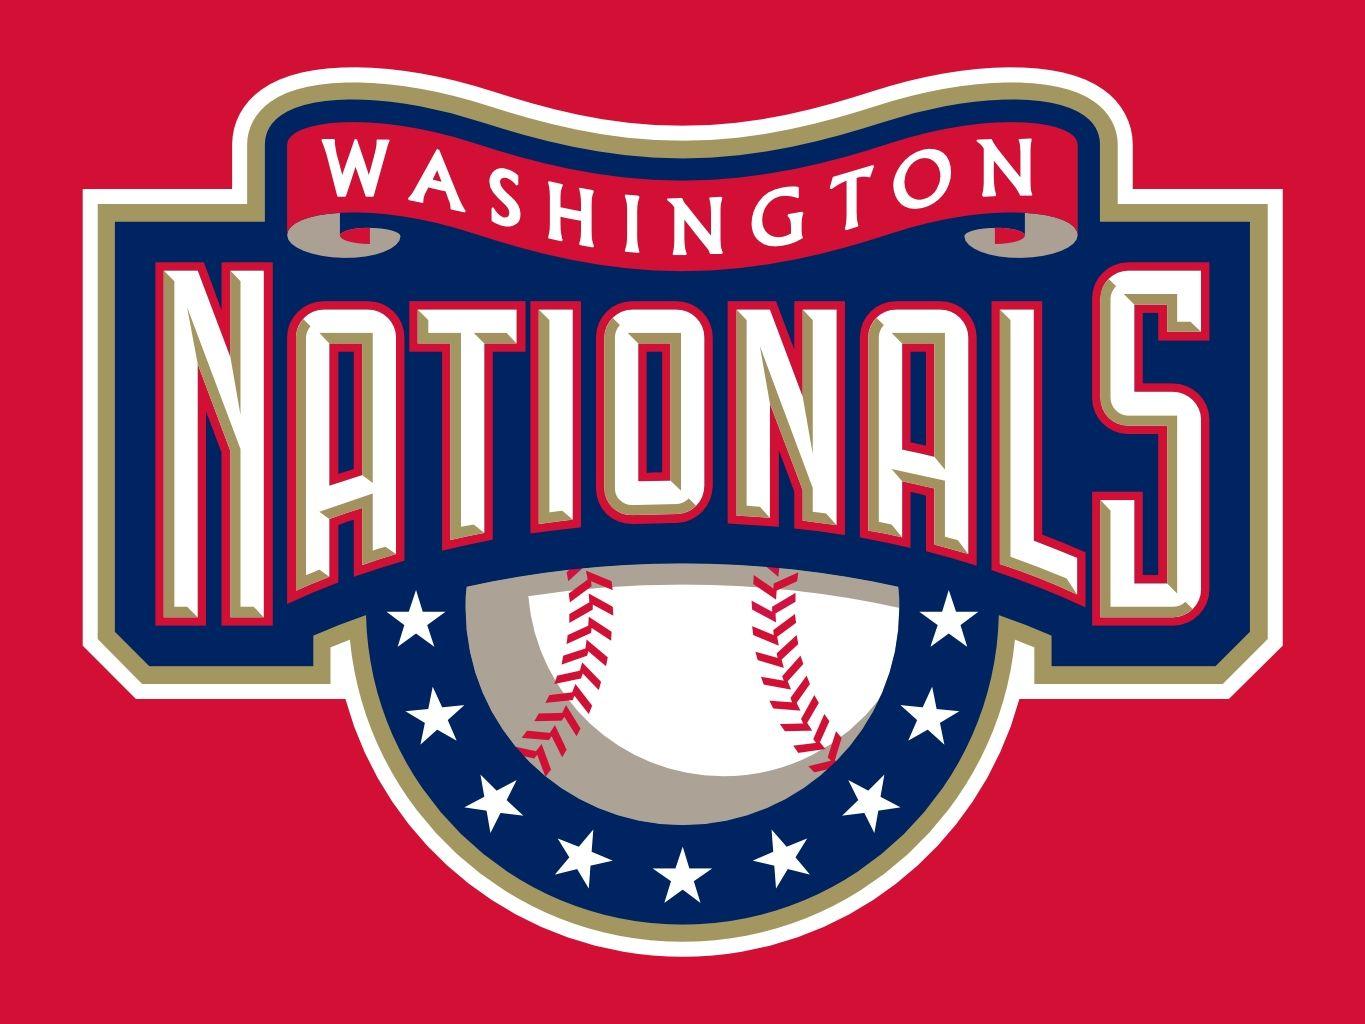 Washington Nationals MLB Celebration. HilarShin Advertising